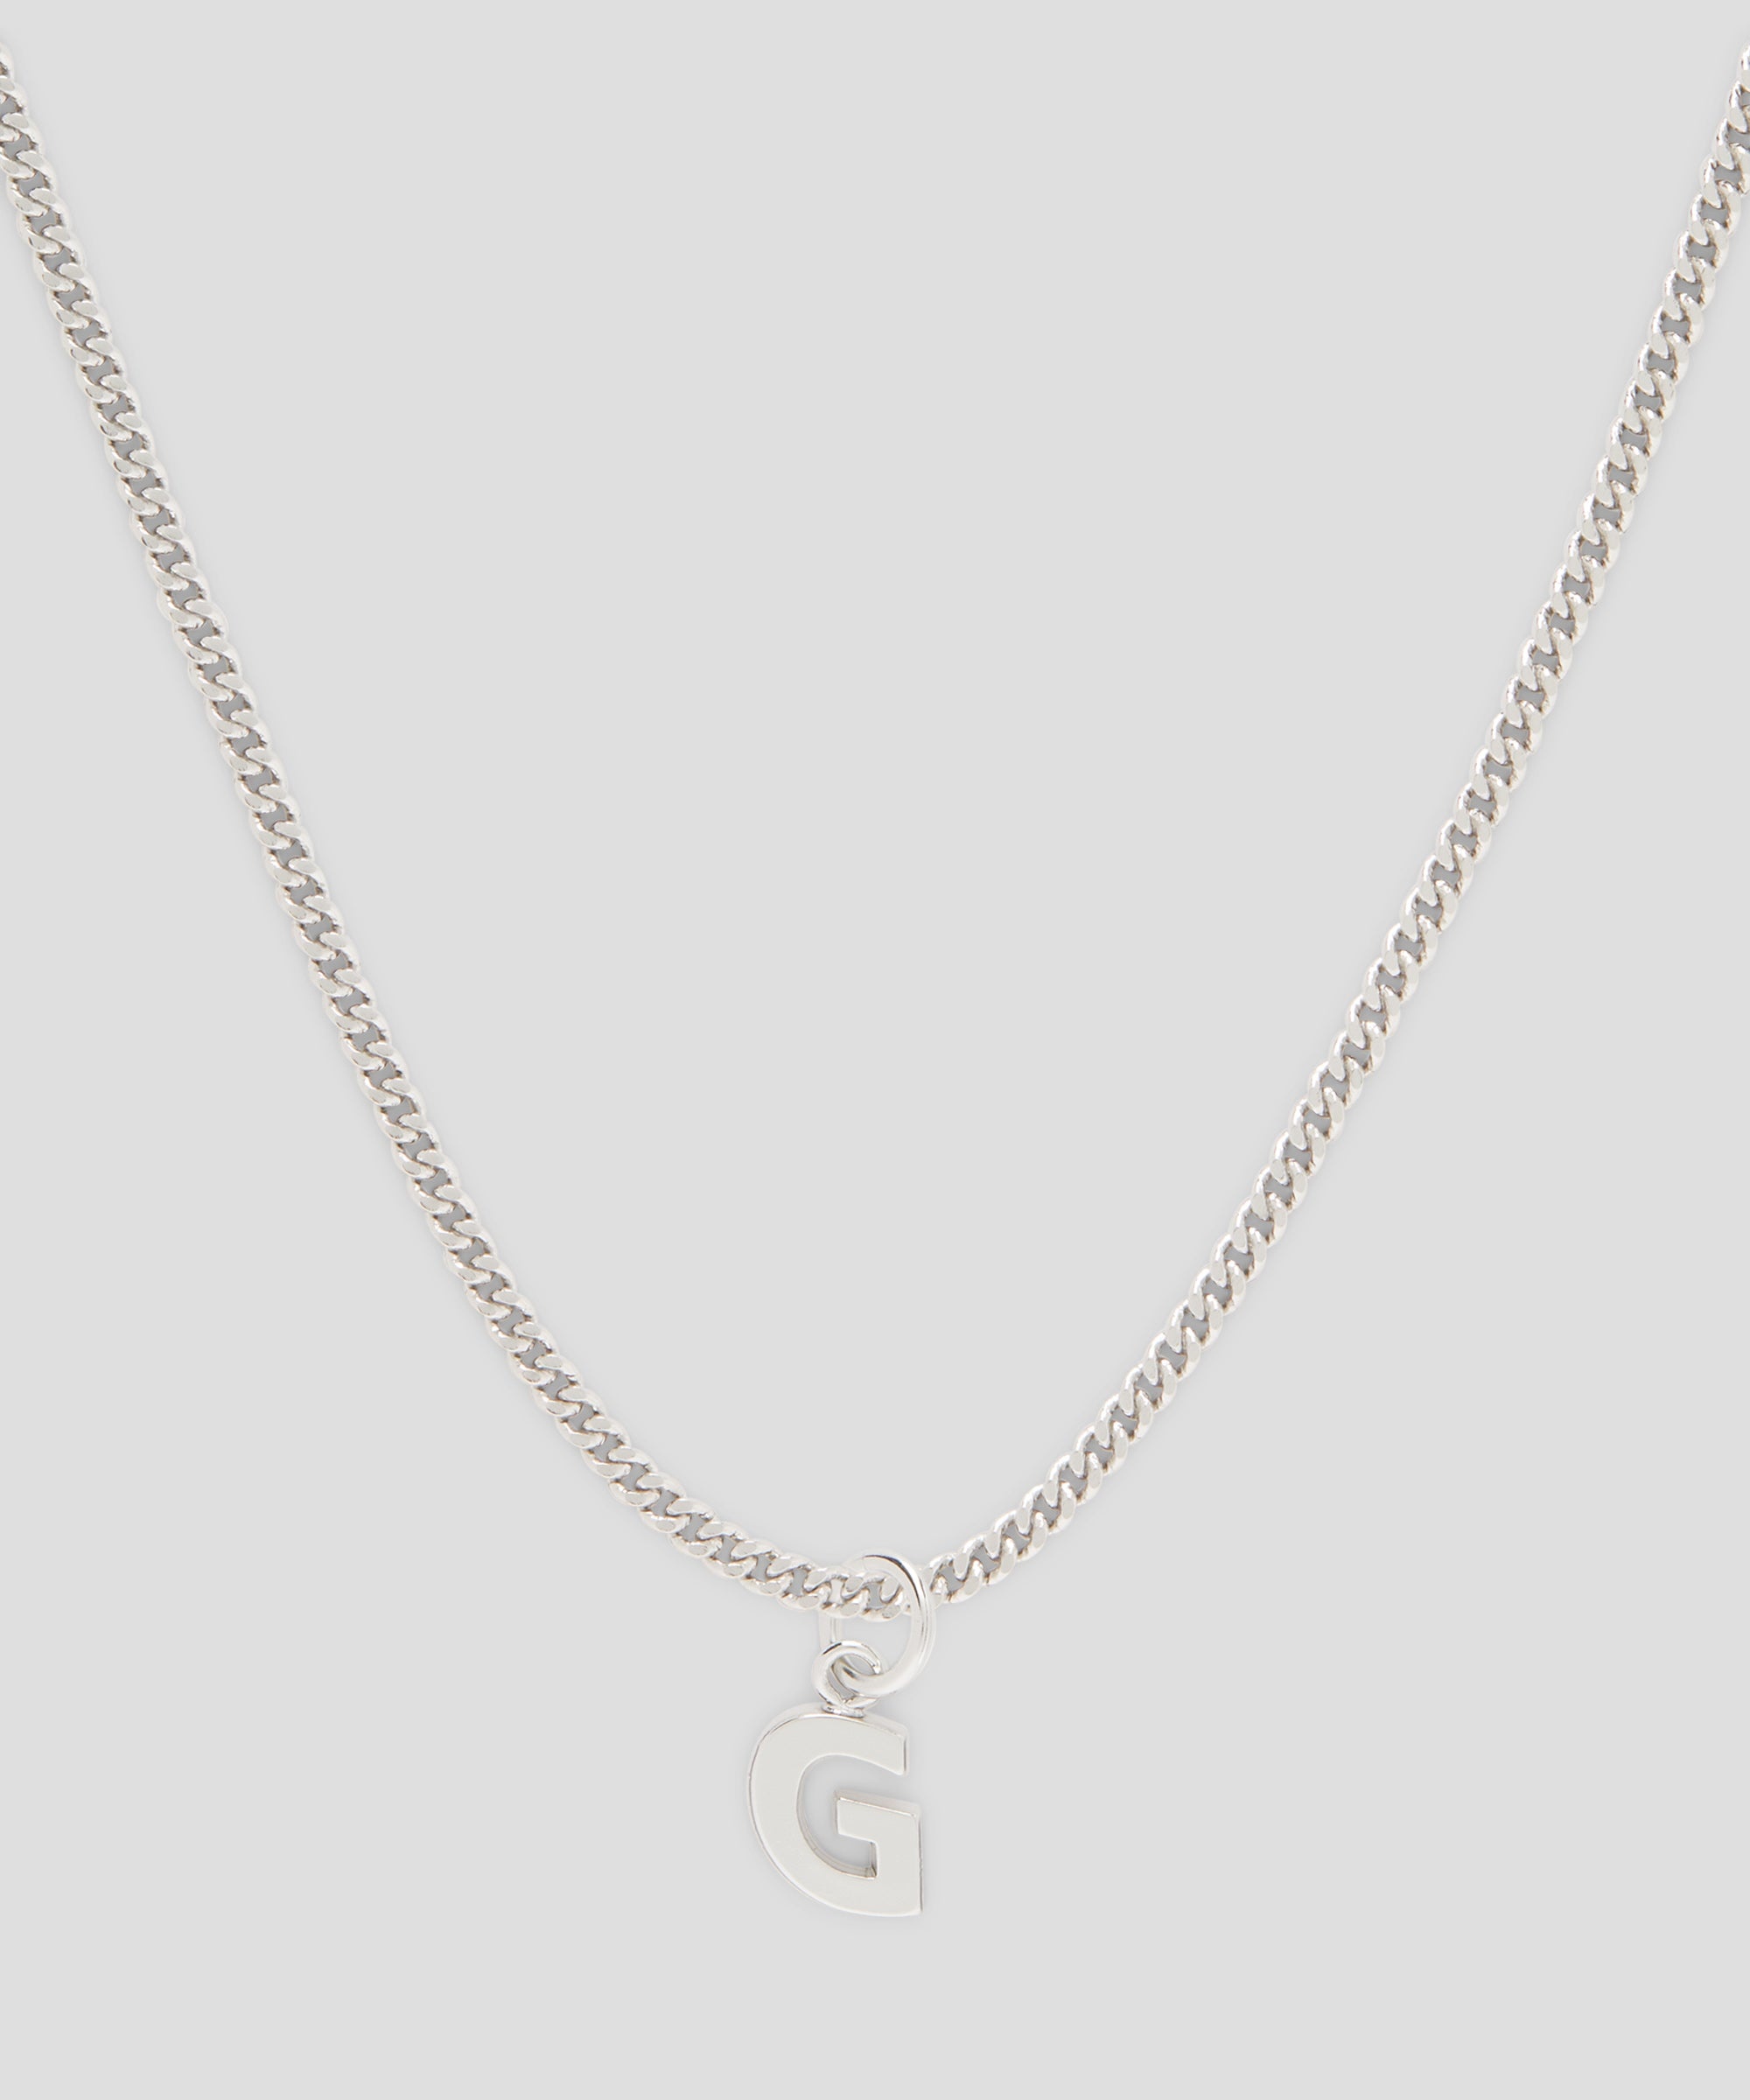 Brass letter G charm - 2